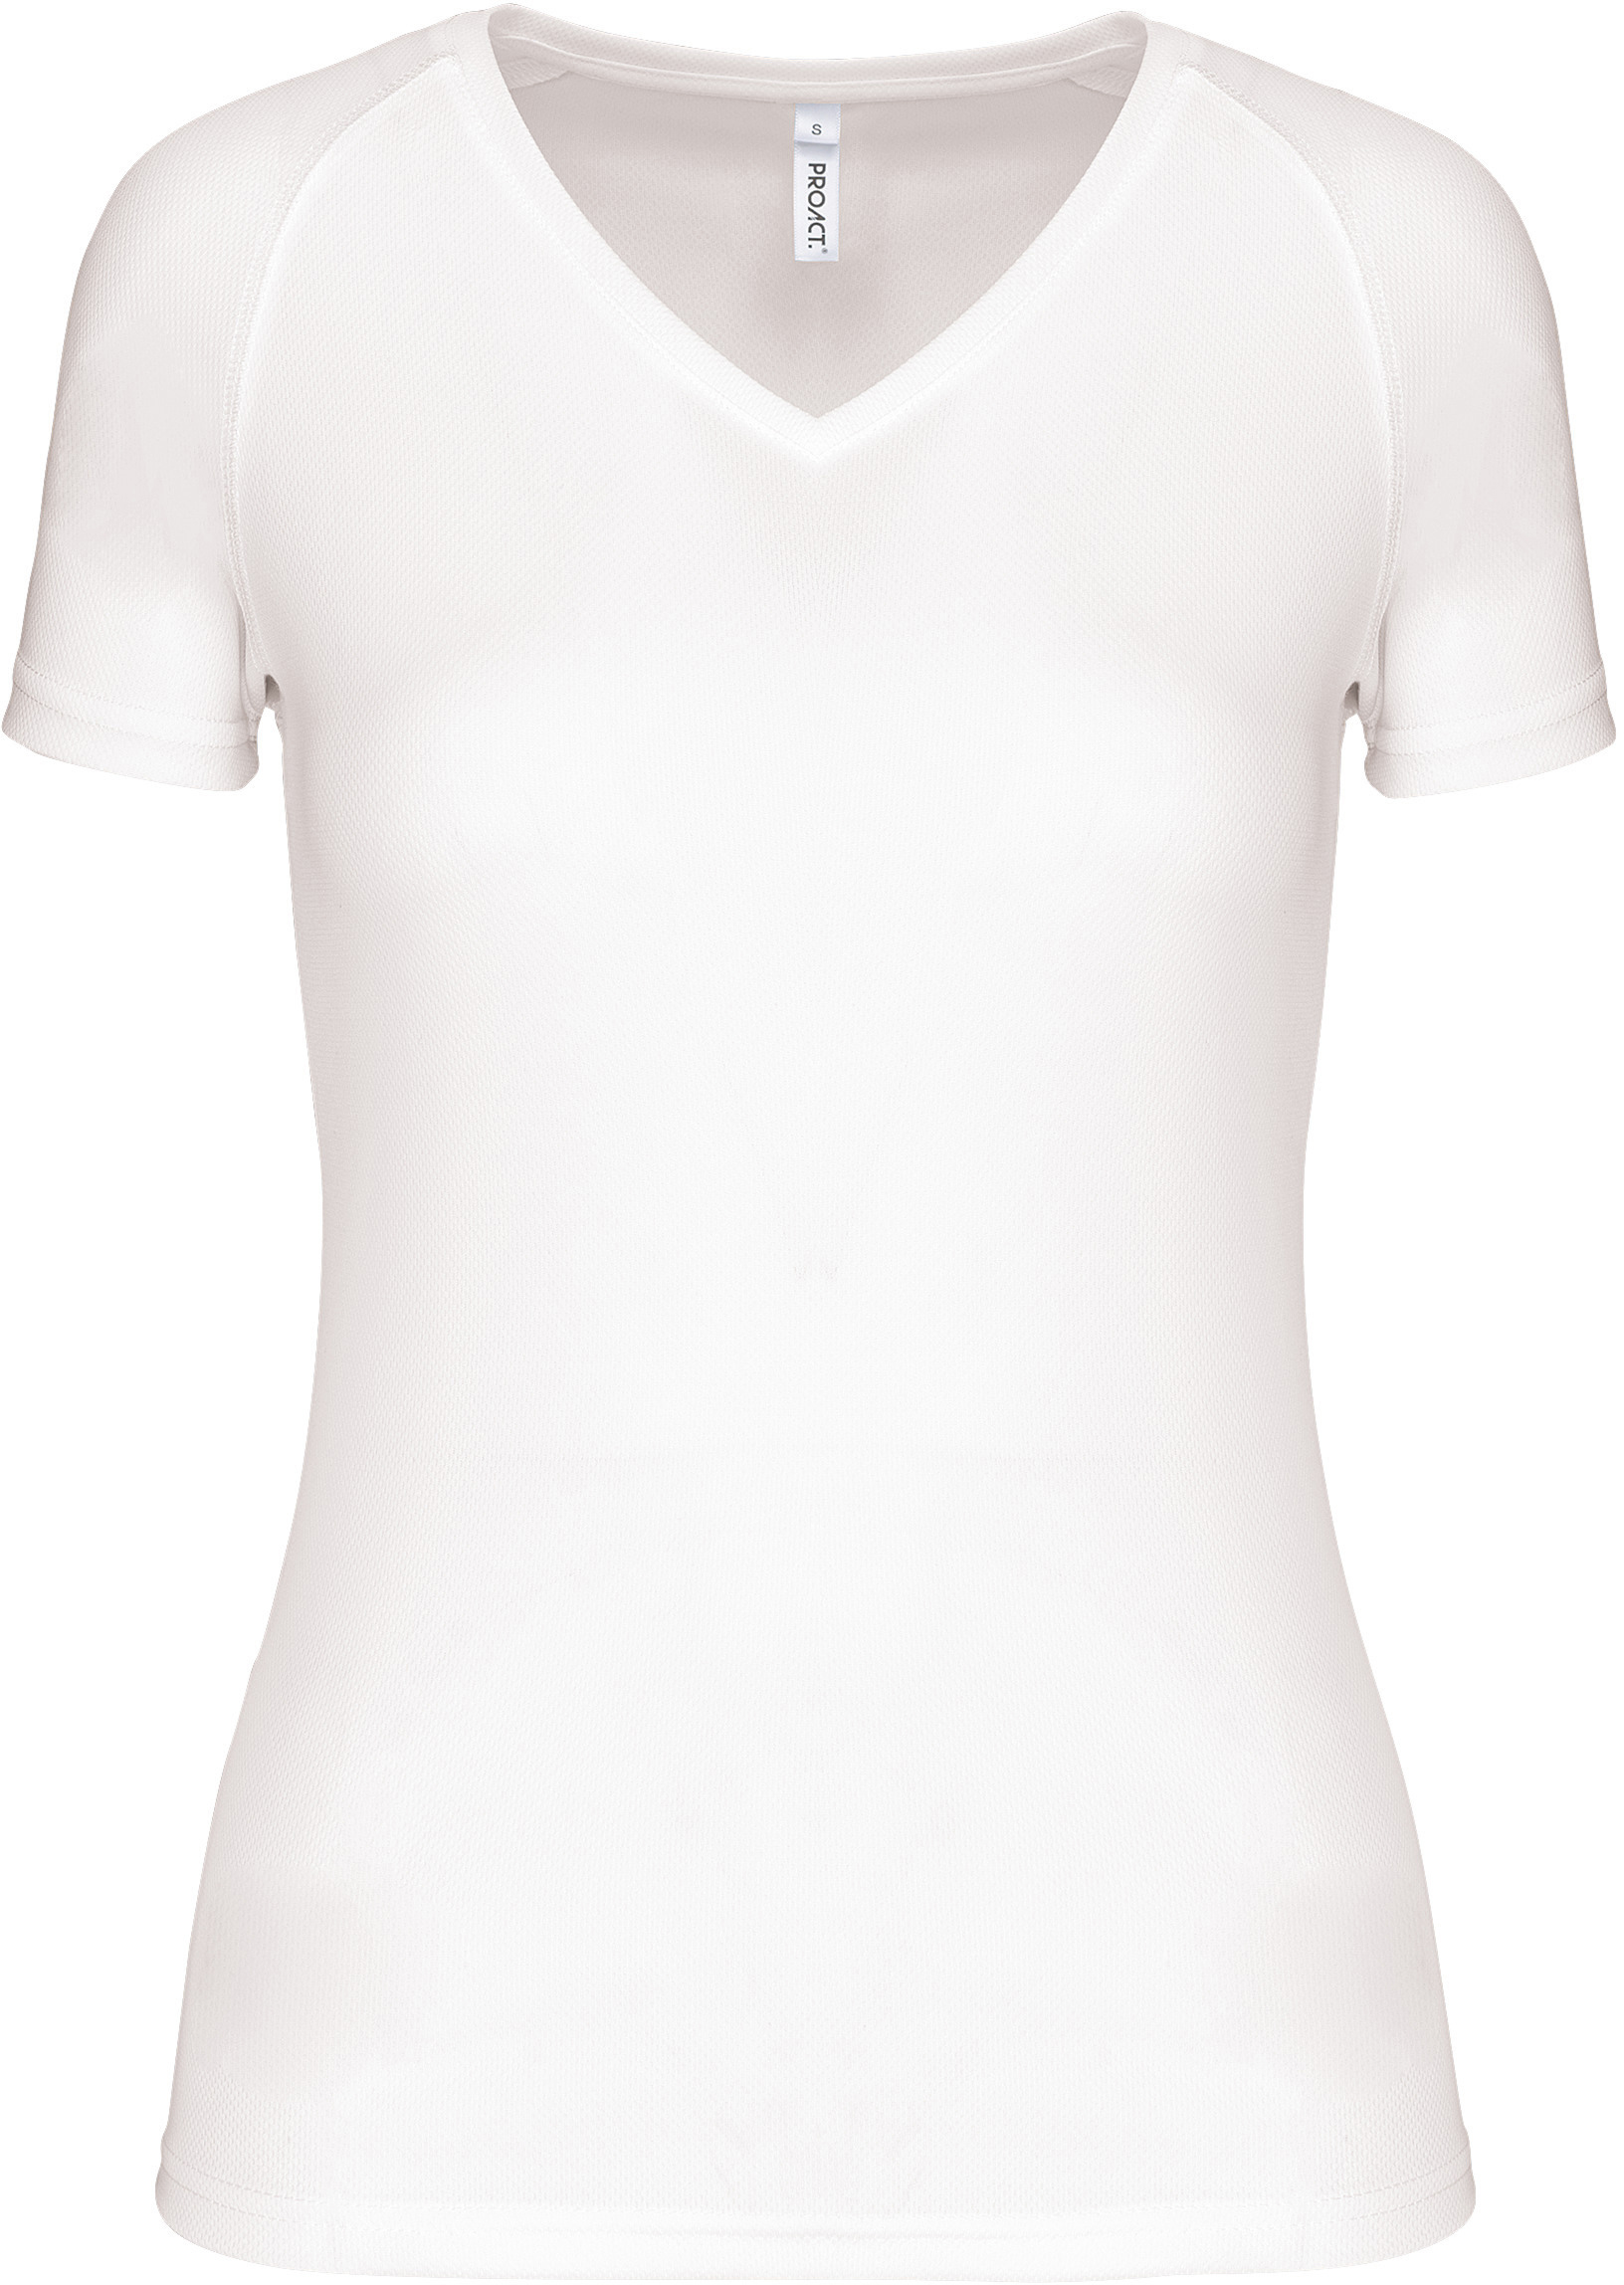 Dámské sportovní tričko s výstřihem do V PA477 Barva: bílá, Velikost: L